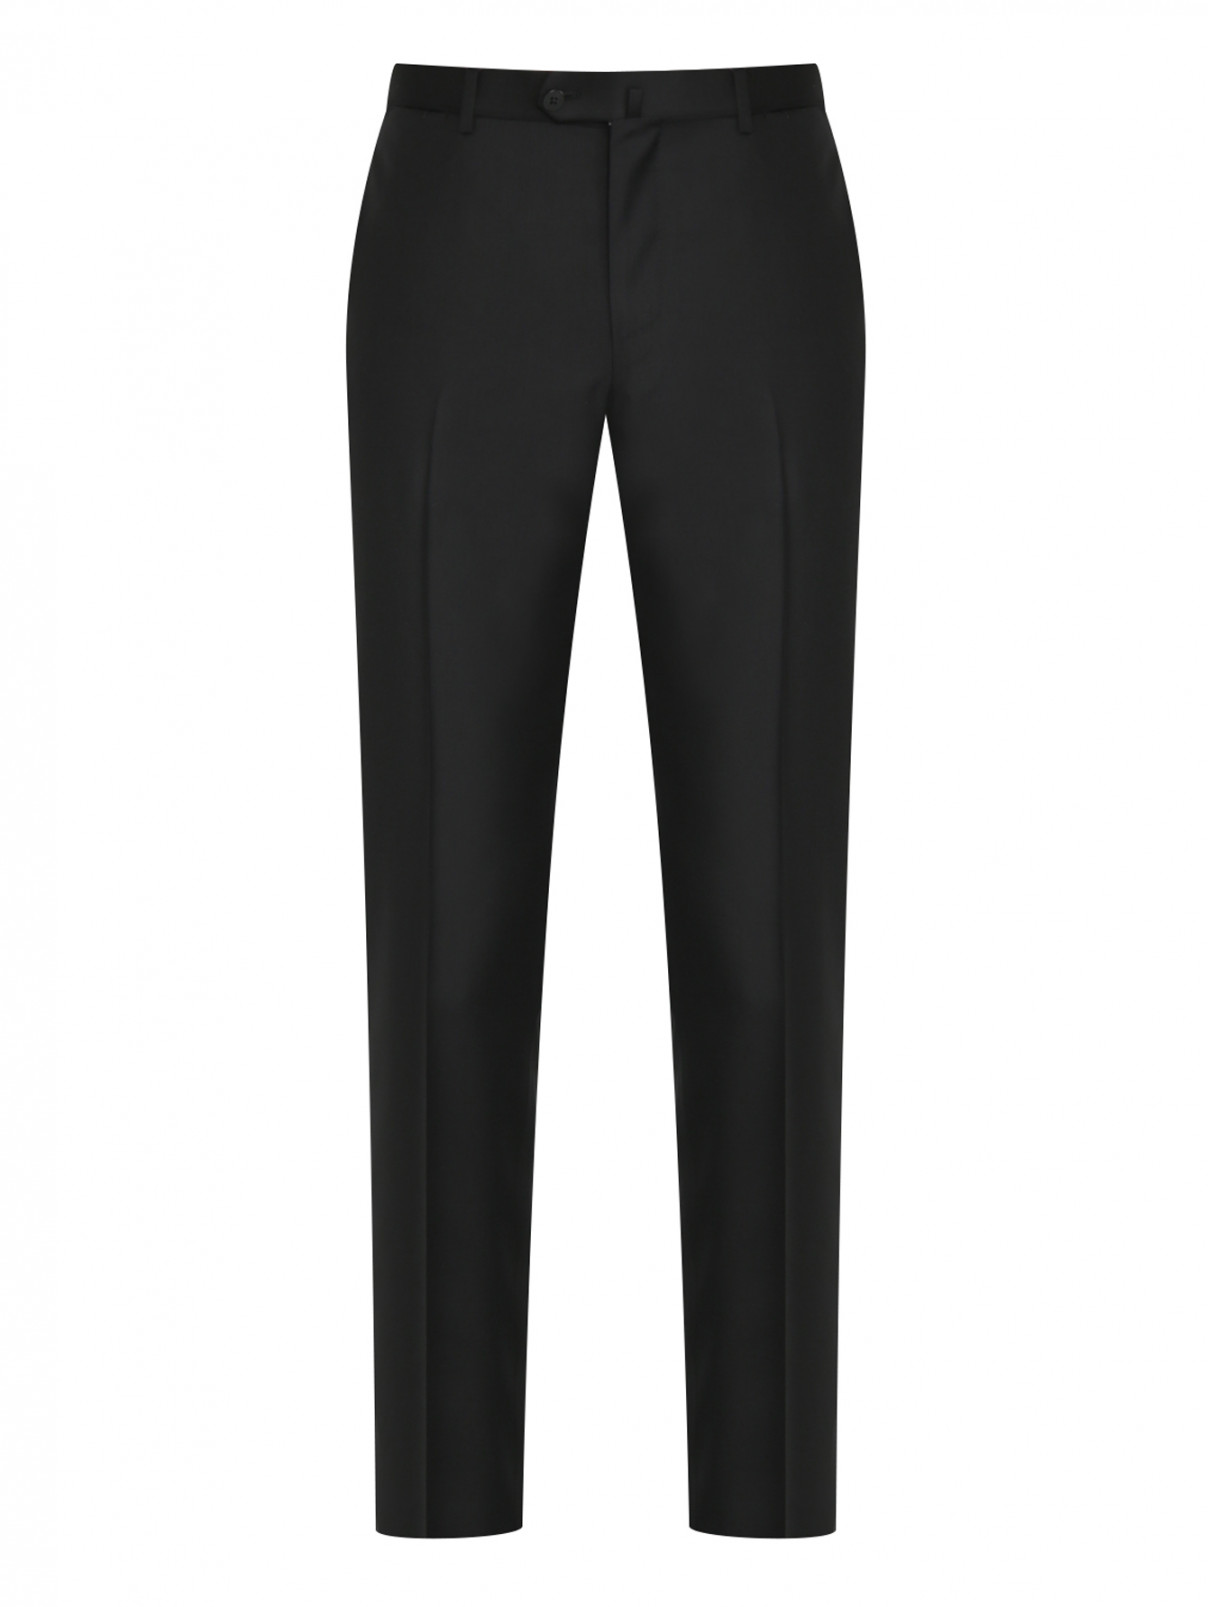 Однотонные брюки из шерсти Isaia  –  Общий вид  – Цвет:  Черный